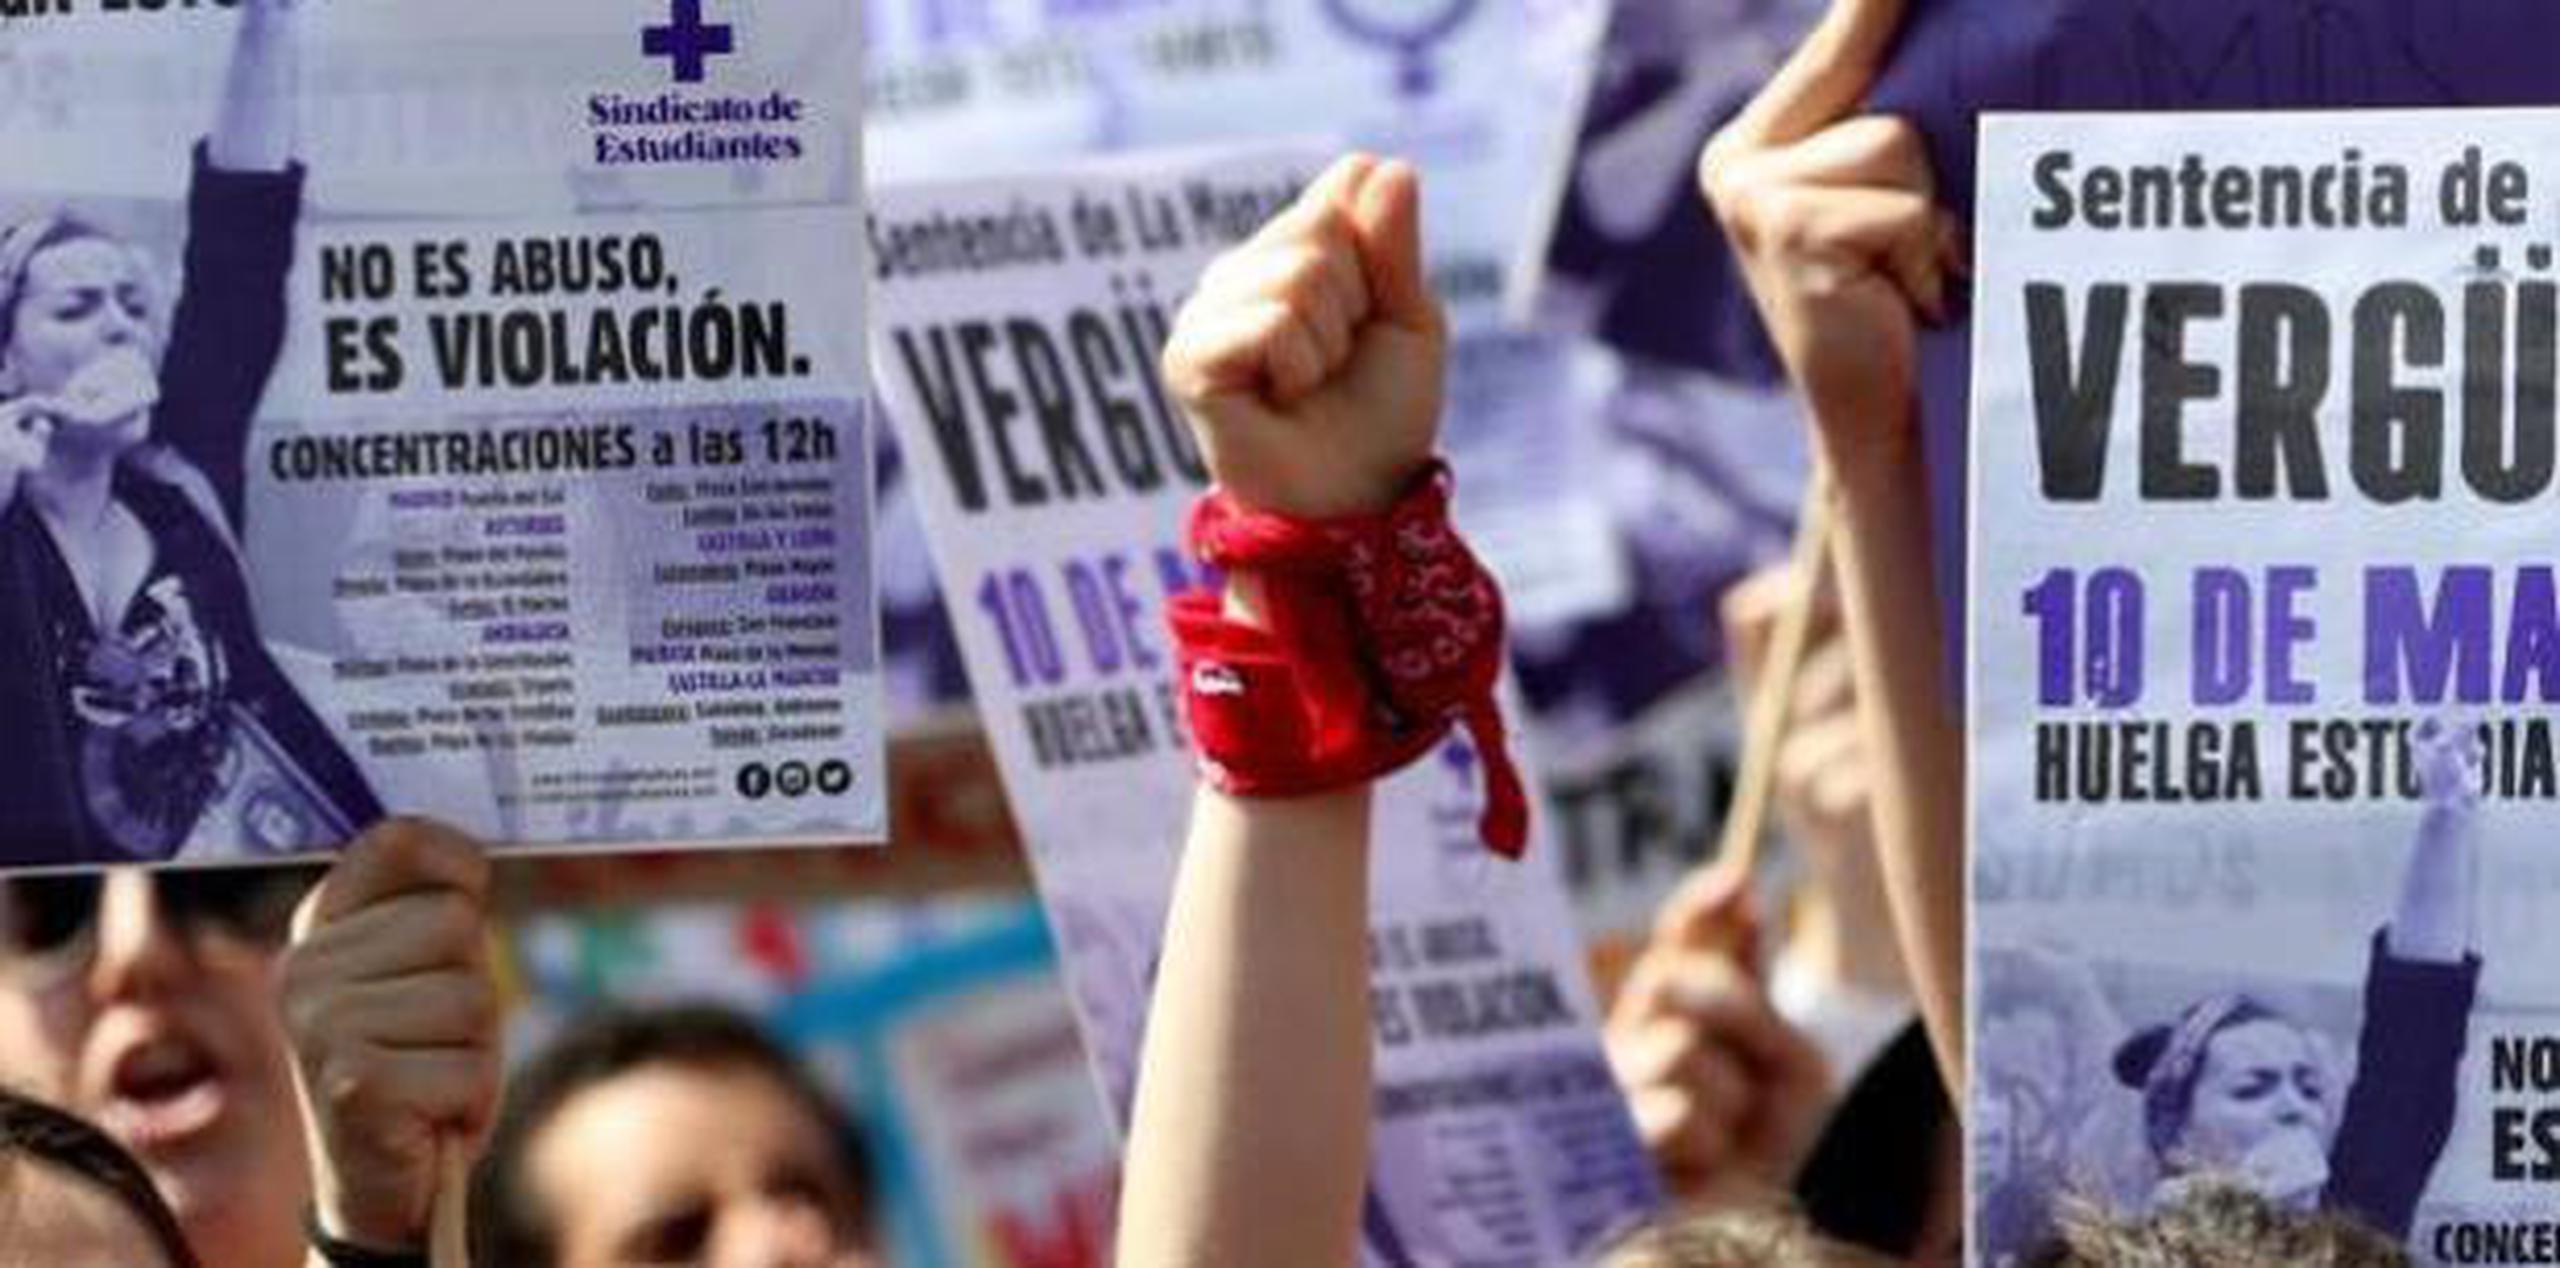 La sentencia provocó protestas de defensoras de los derechos de las mujeres en varias ciudades de España, al considerar que el fallo judicial era indulgente. (EFE)